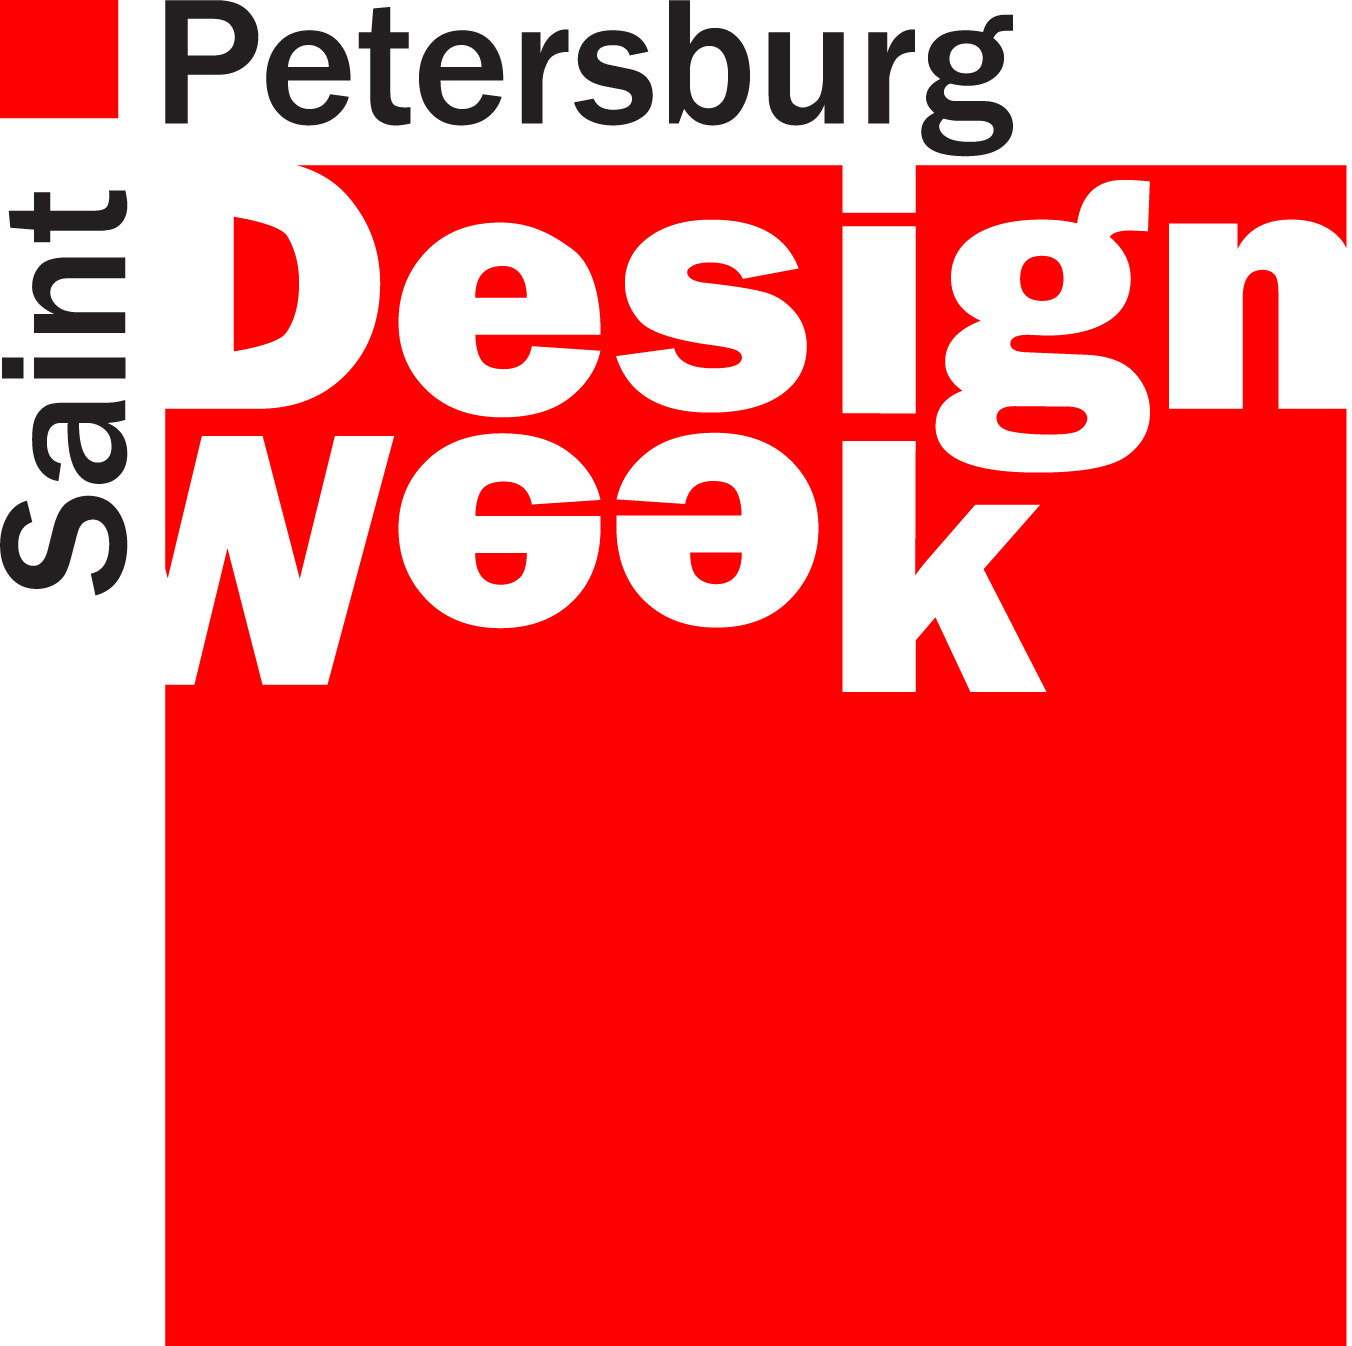 St. Petersburg Design Week